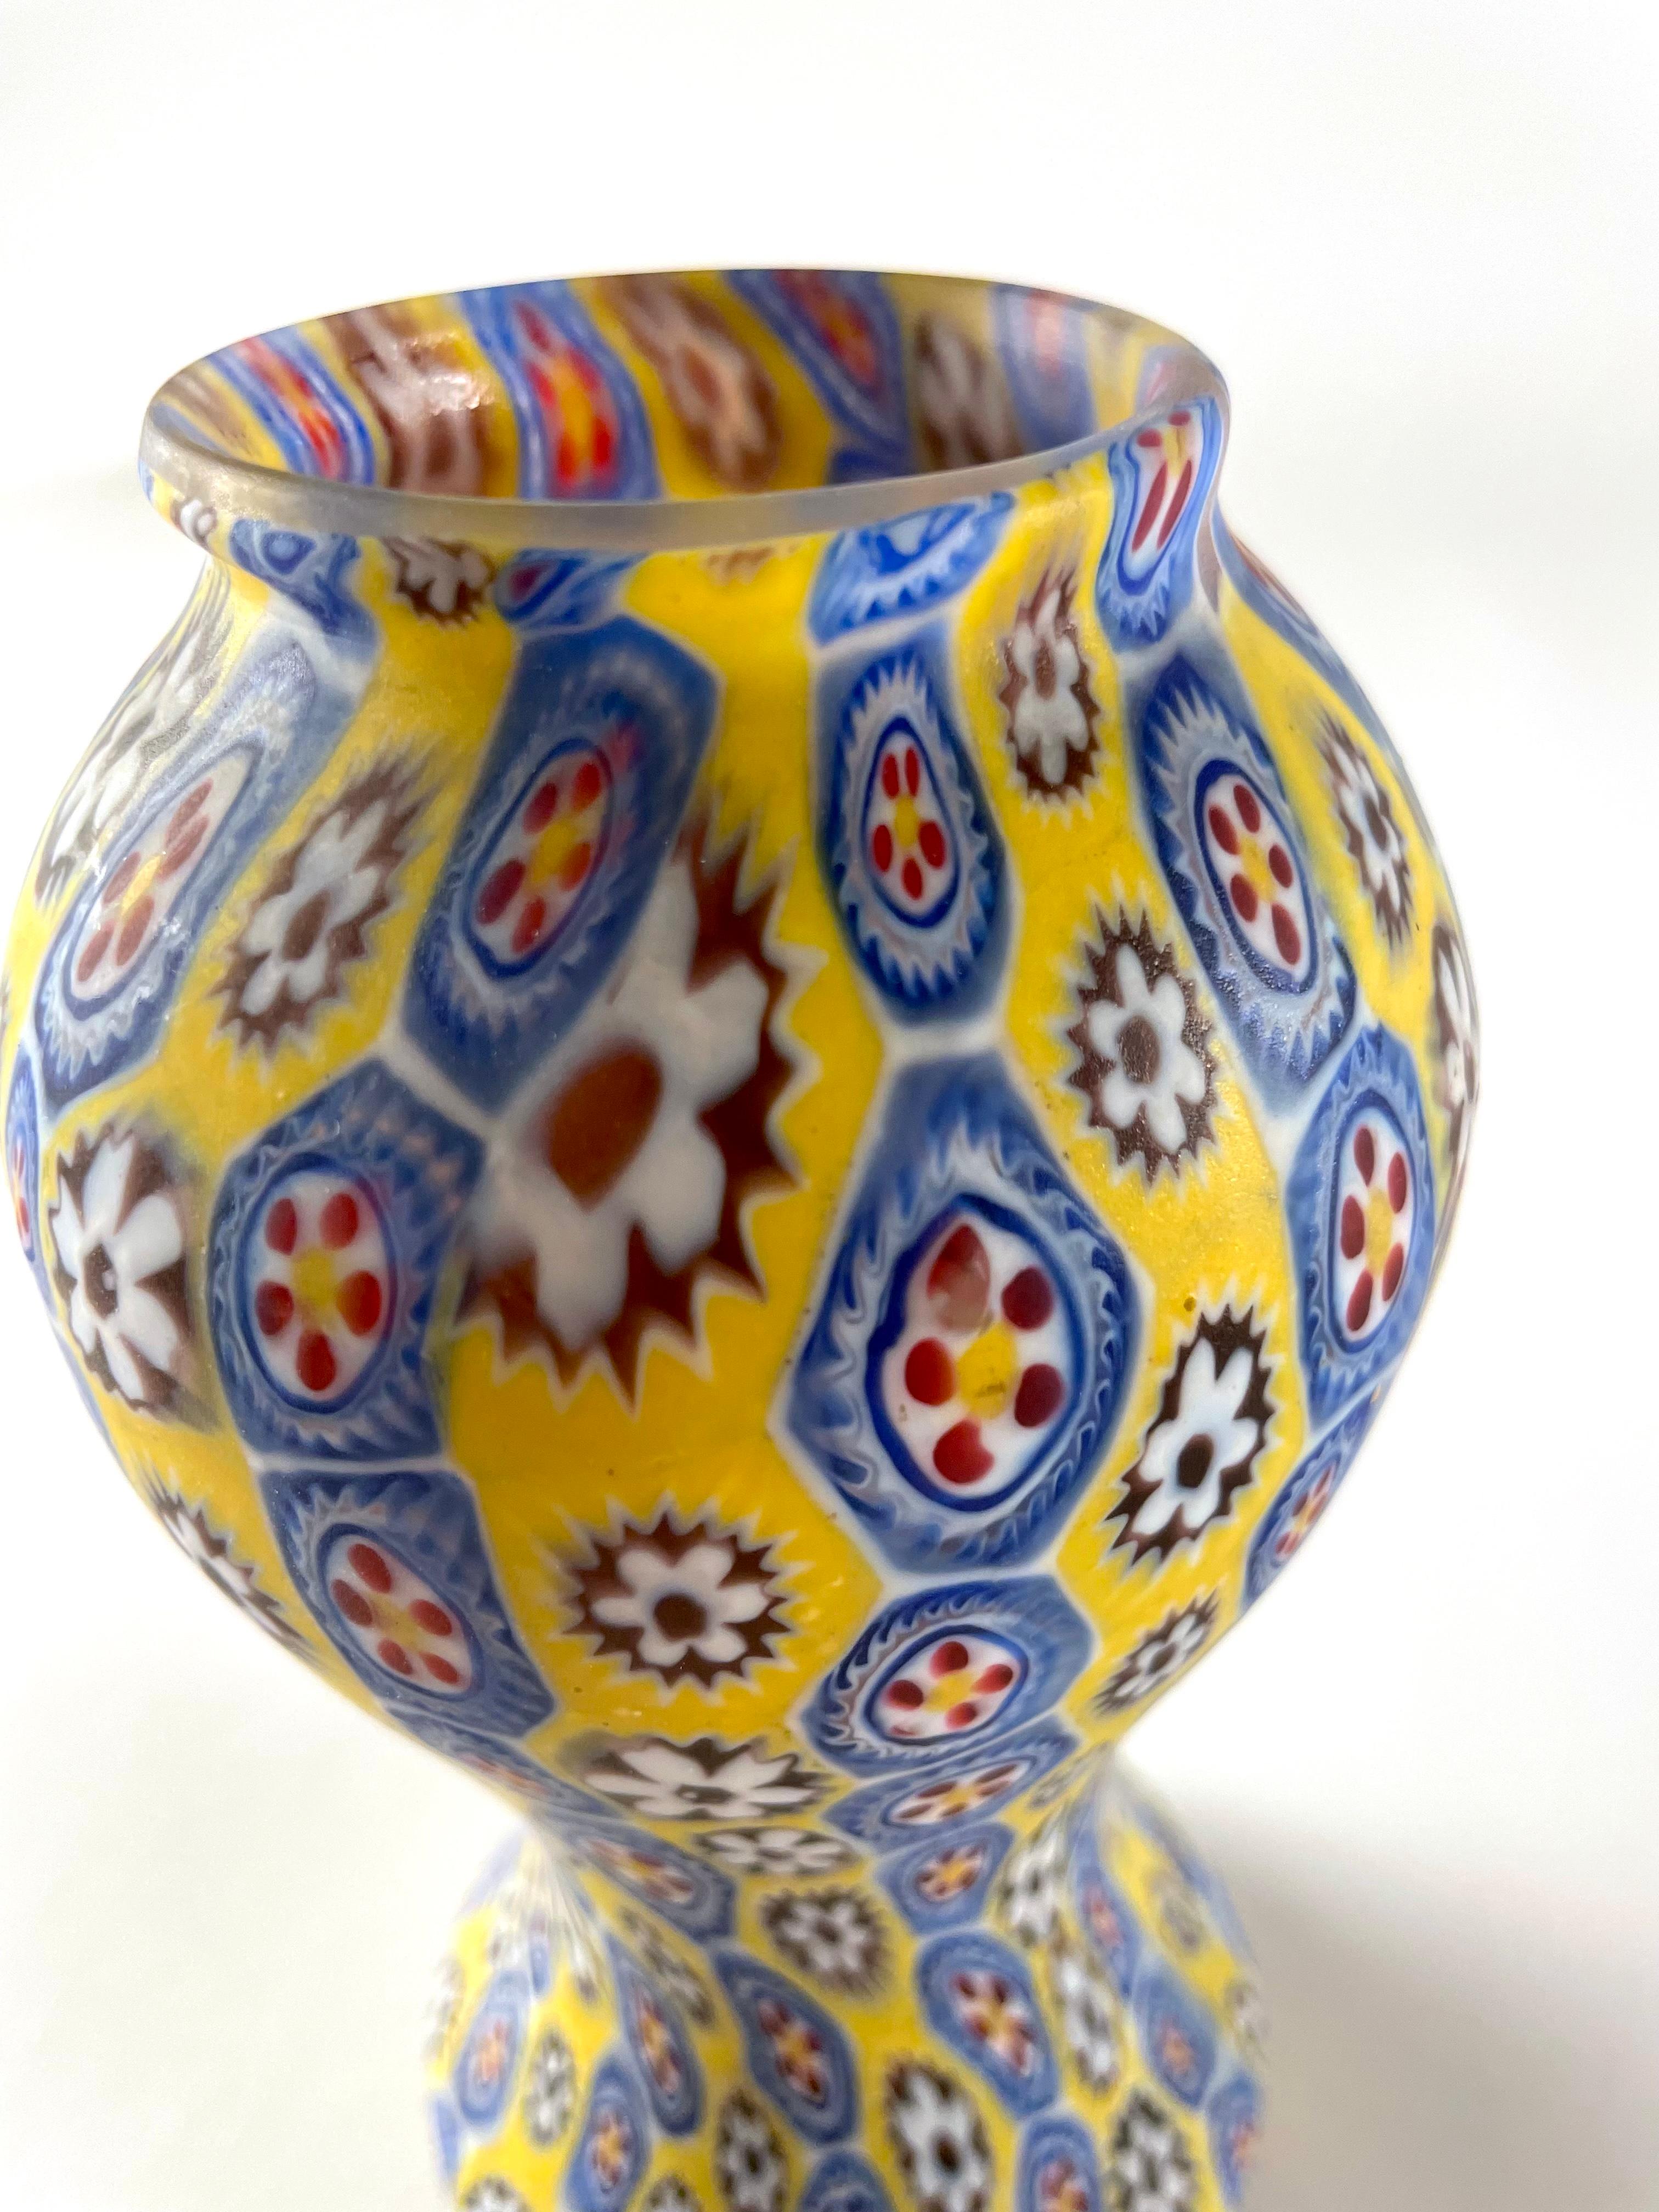 Eine klassische Vase aus Murrina Millefiori von Fratelli Toso. Dieses klassische Design stammt von Anfang der 50er Jahre und zeigt die echte Handwerkskunst, die Fratelli Toso berühmt gemacht hat. Dieses Stück wurde in sorgfältiger Handarbeit in der